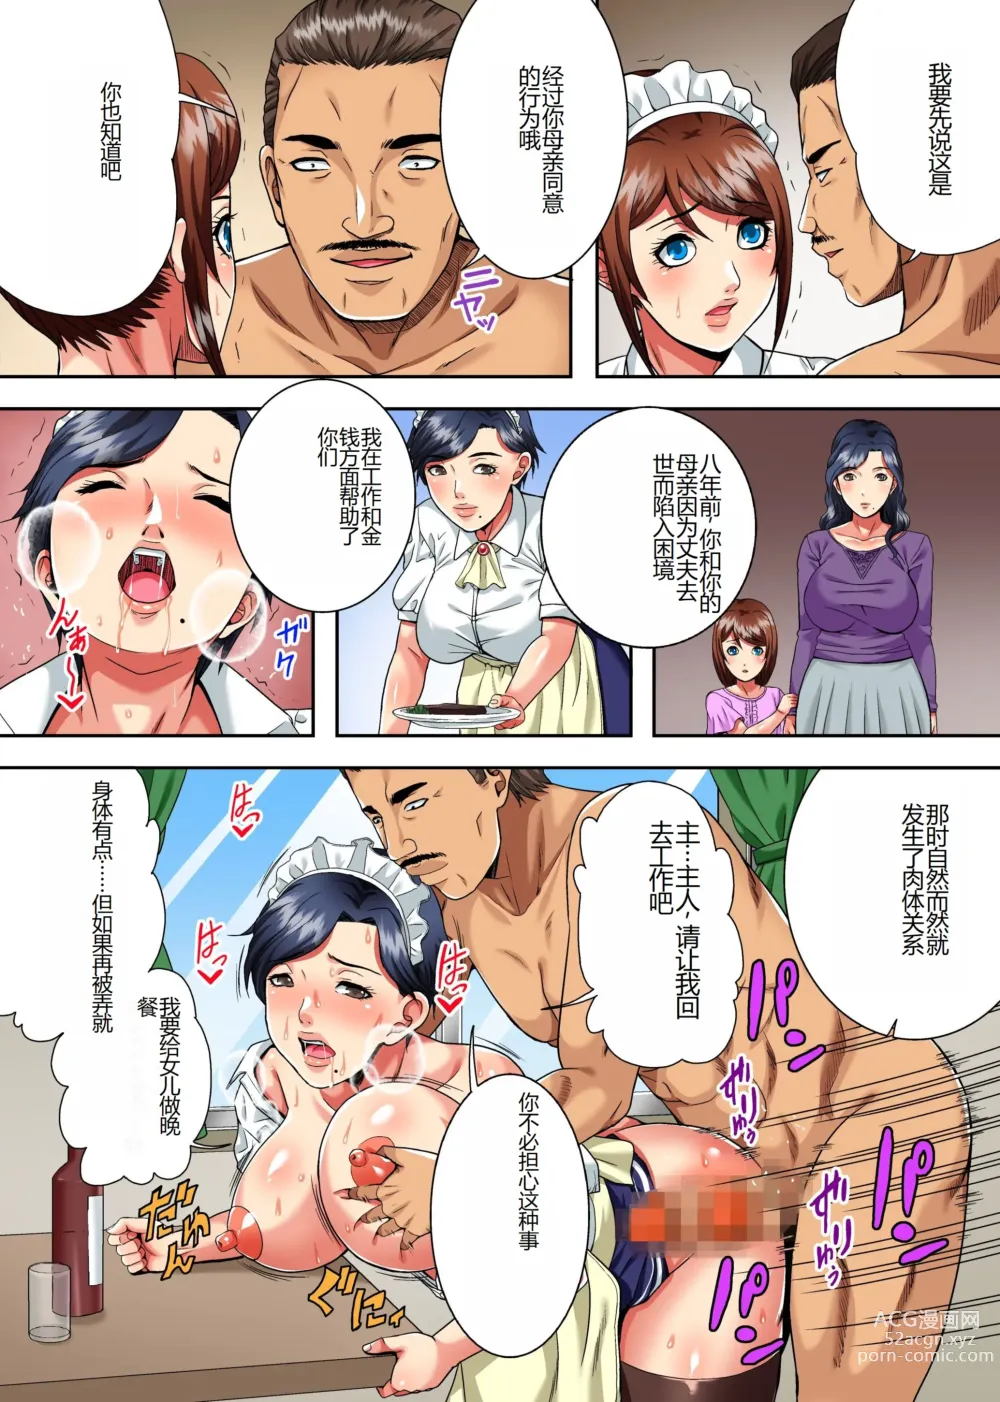 Page 7 of doujinshi Mama wa Ano Hito no Nama Onaho ~Hachi-nenkan Jikkuri to Shikonda Jukujo Ana to Pichipichi Shojo Ana no Gokujo Oyakodon~